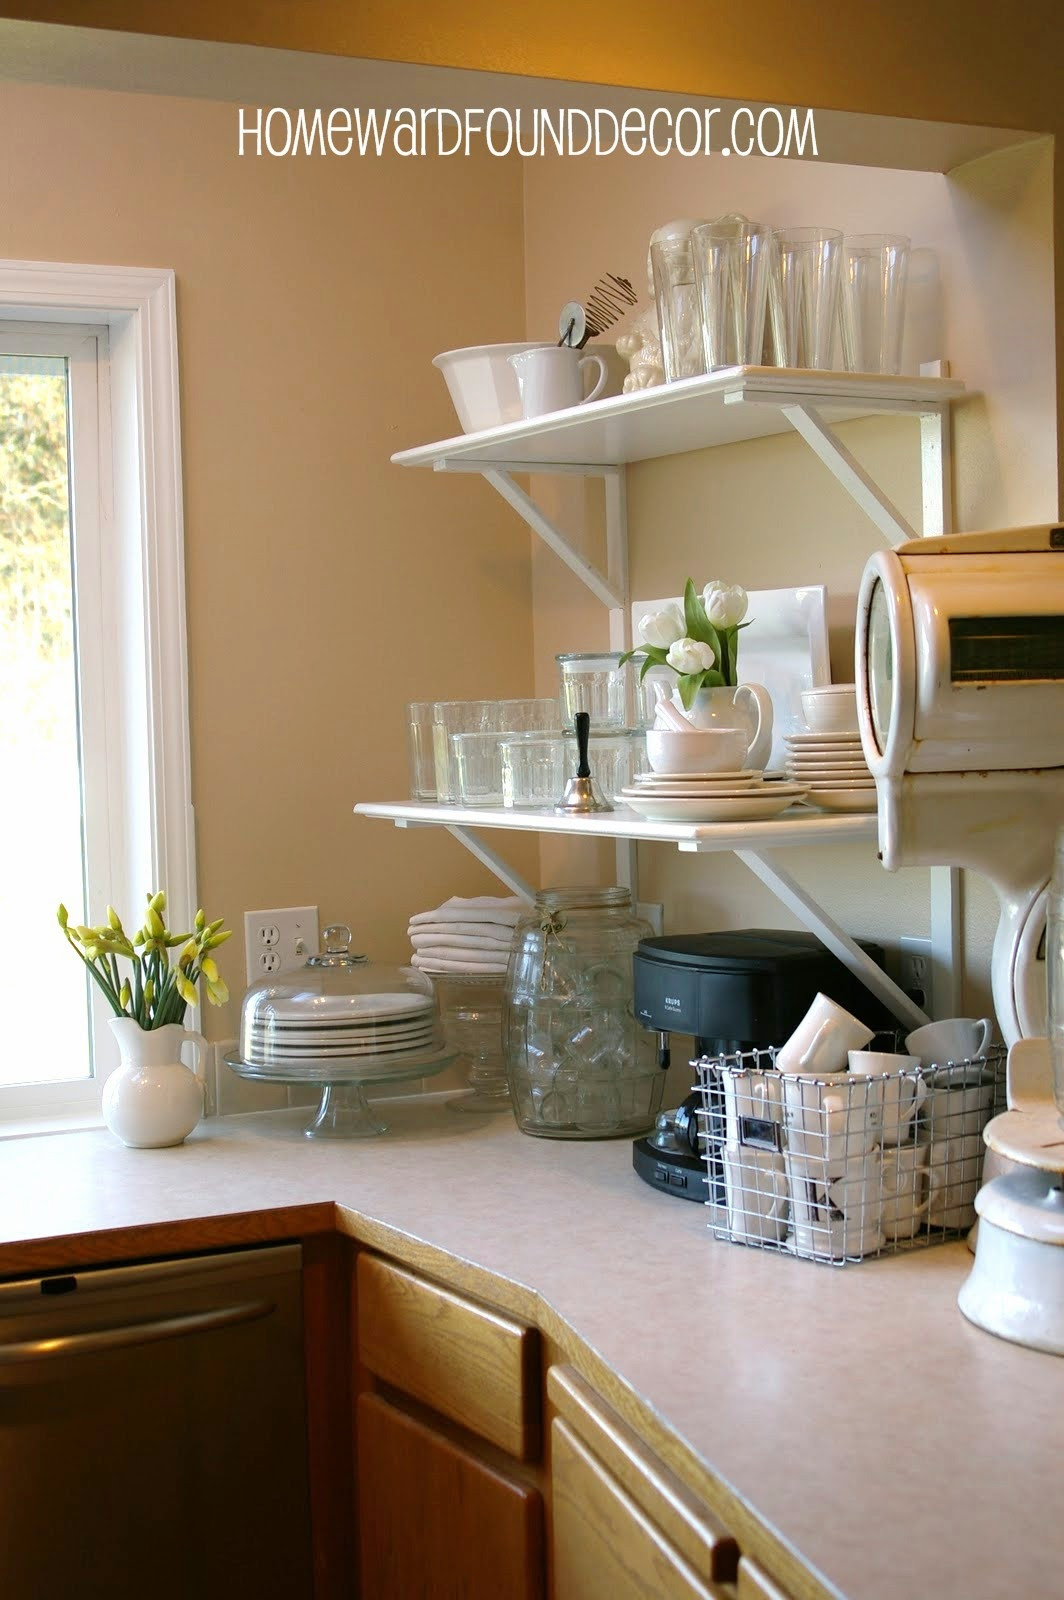 Best ideas about DIY Kitchen Shelf
. Save or Pin DIY Kitchen Cabinet to Shelf Makeover homewardFOUND decor Now.